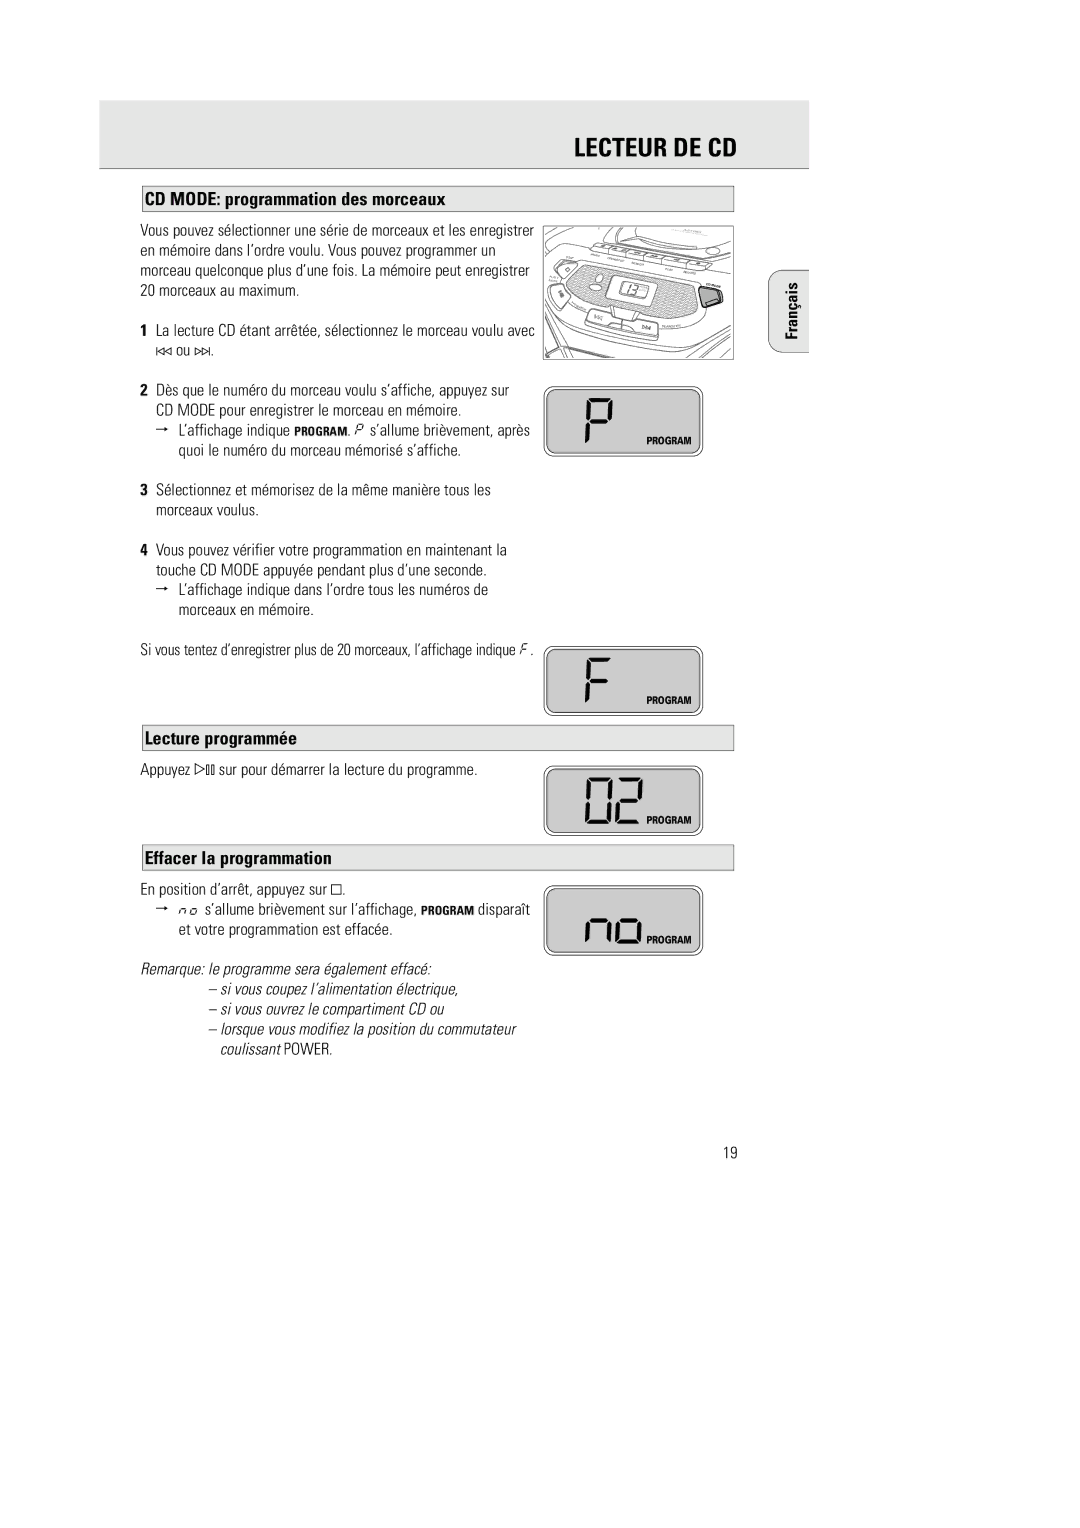 Philips AZ1055 manual CD Mode programmation des morceaux, Lecture programmée, Effacer la programmation 